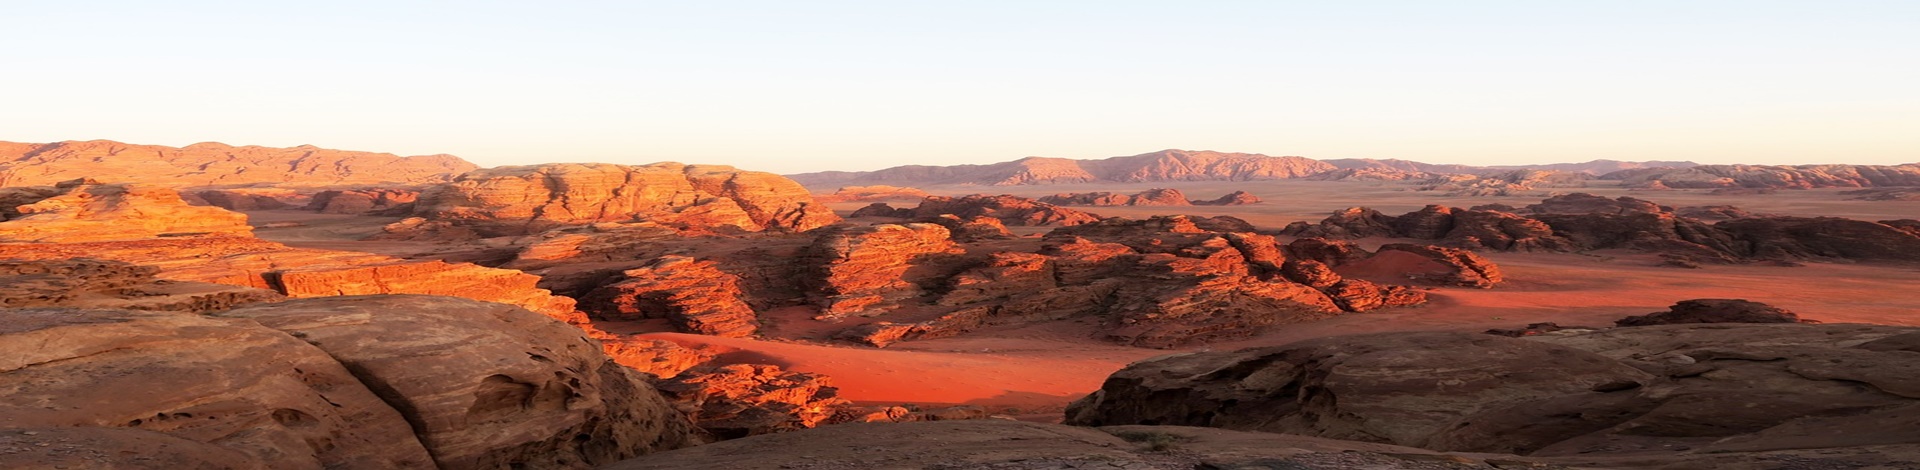 Rote Wüste mit Felsen